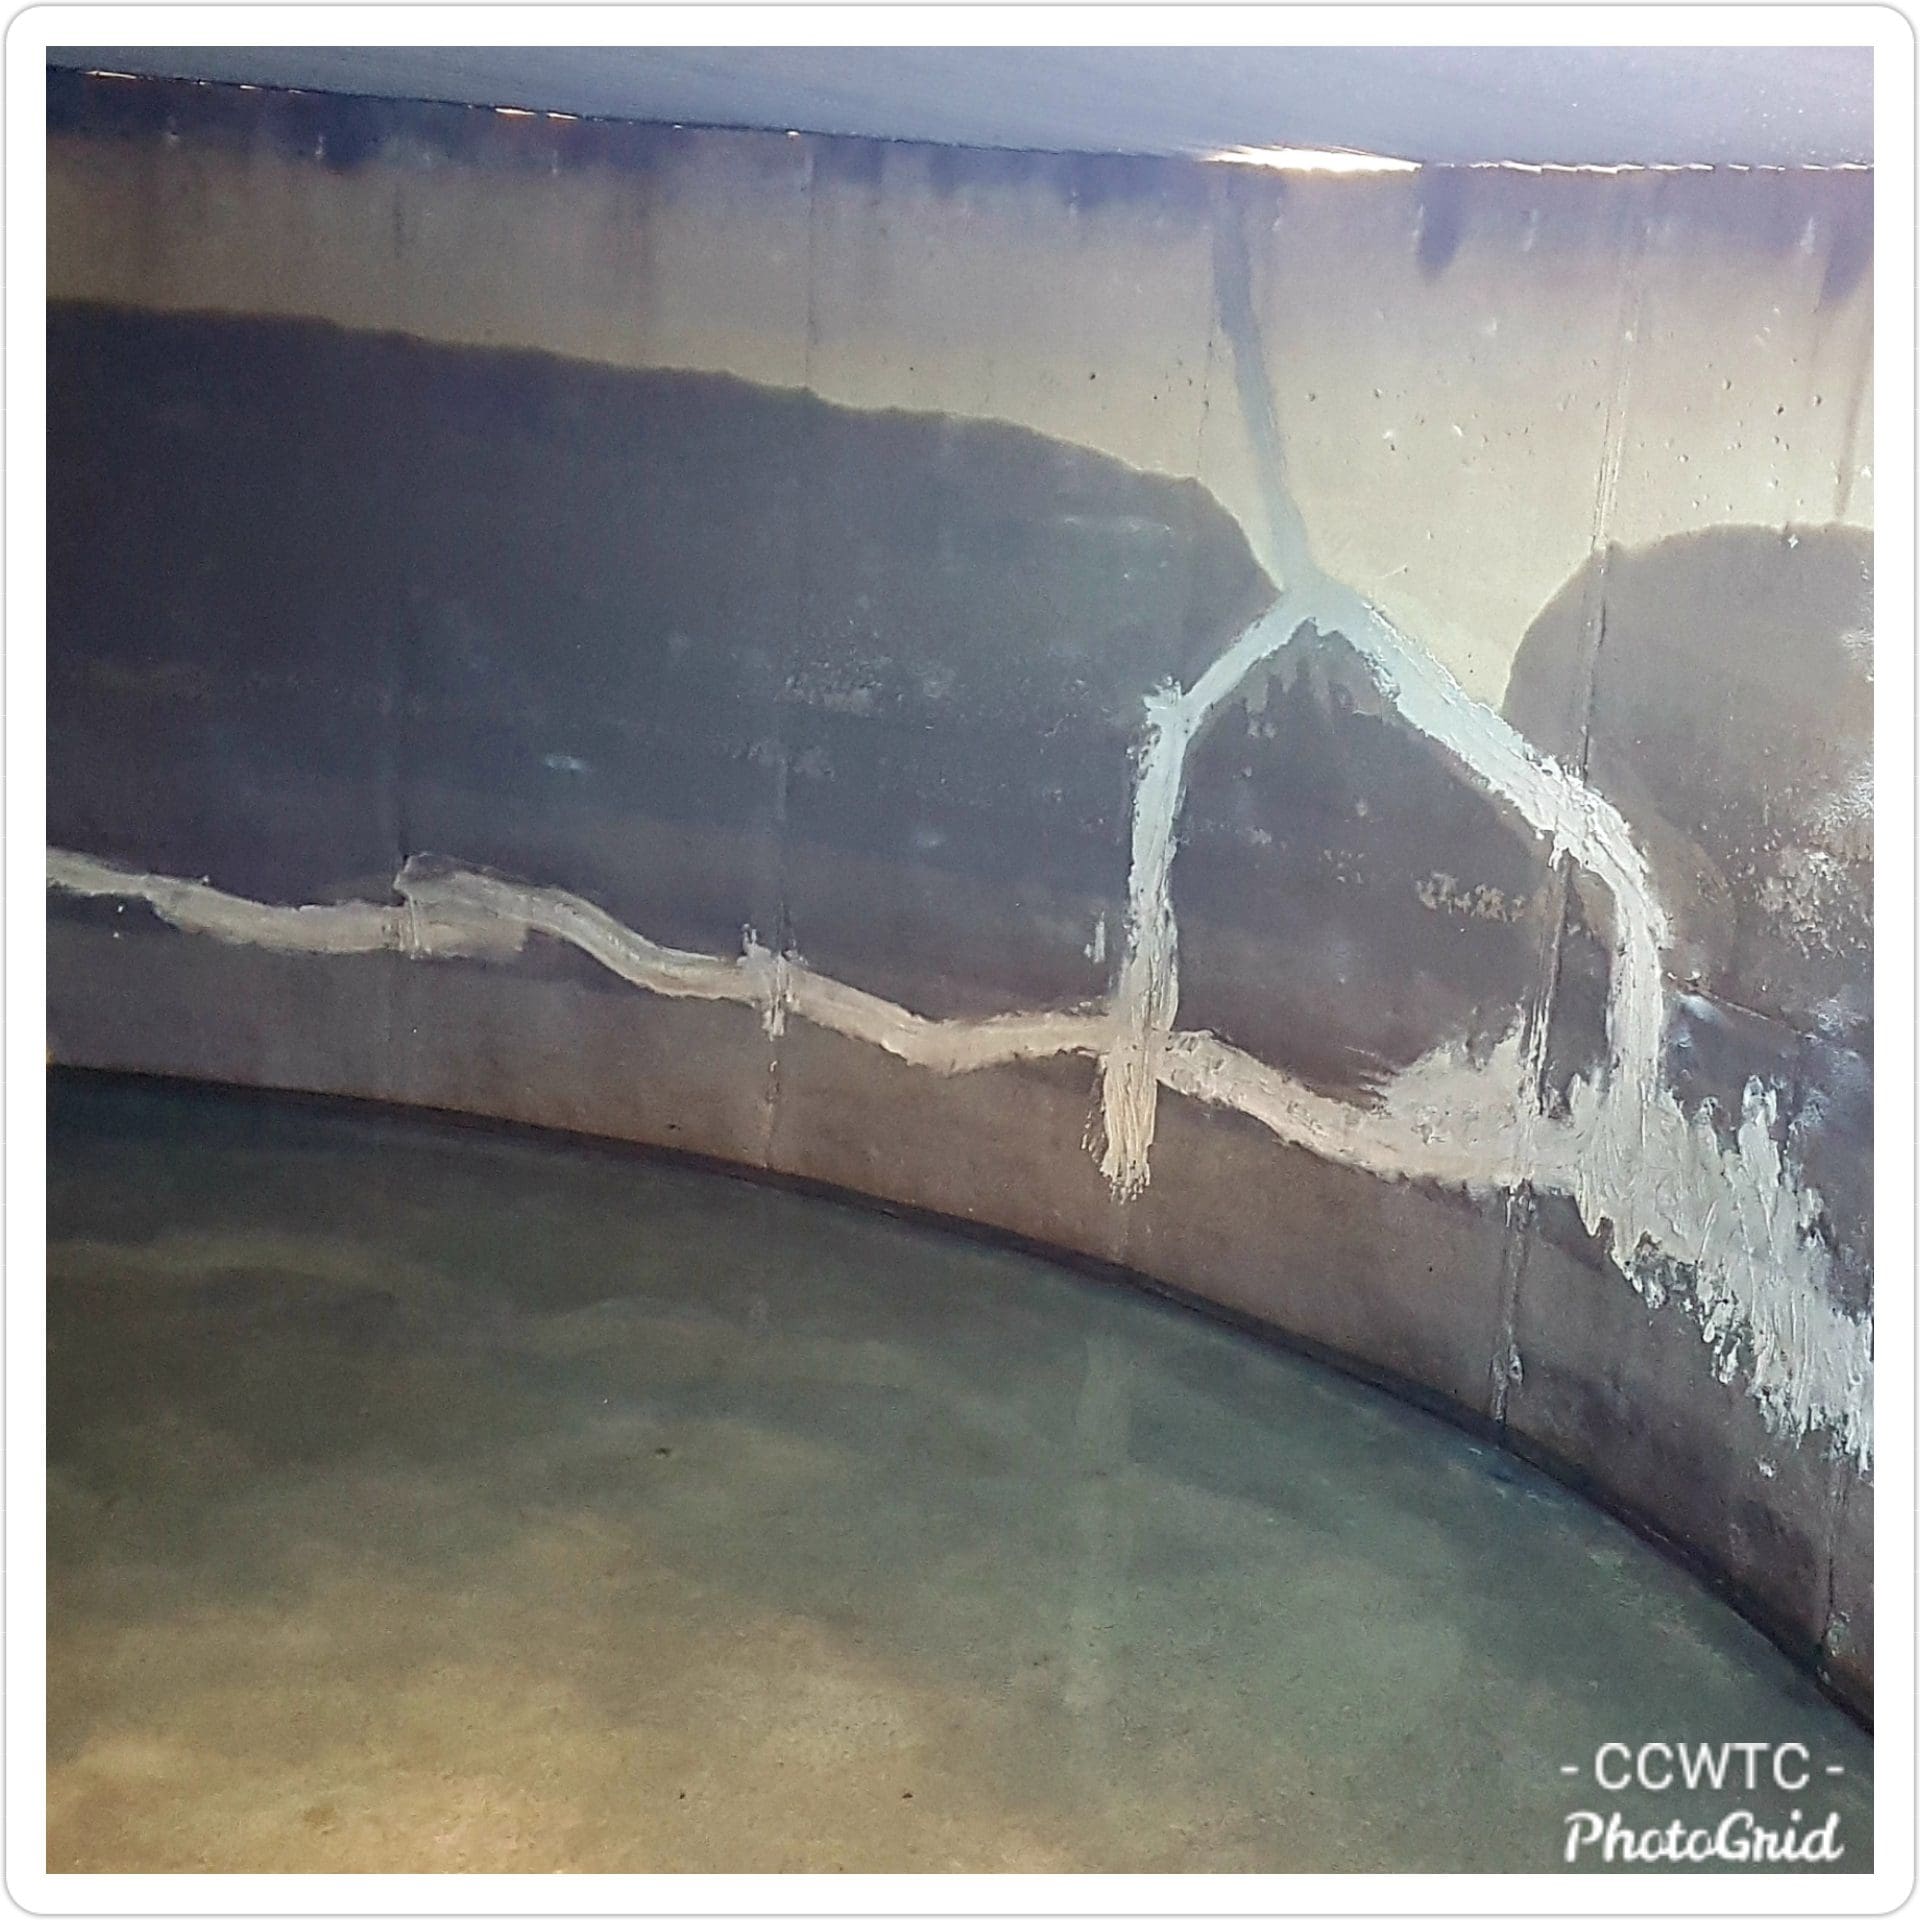 Concrete tank interior showing repaired cracks